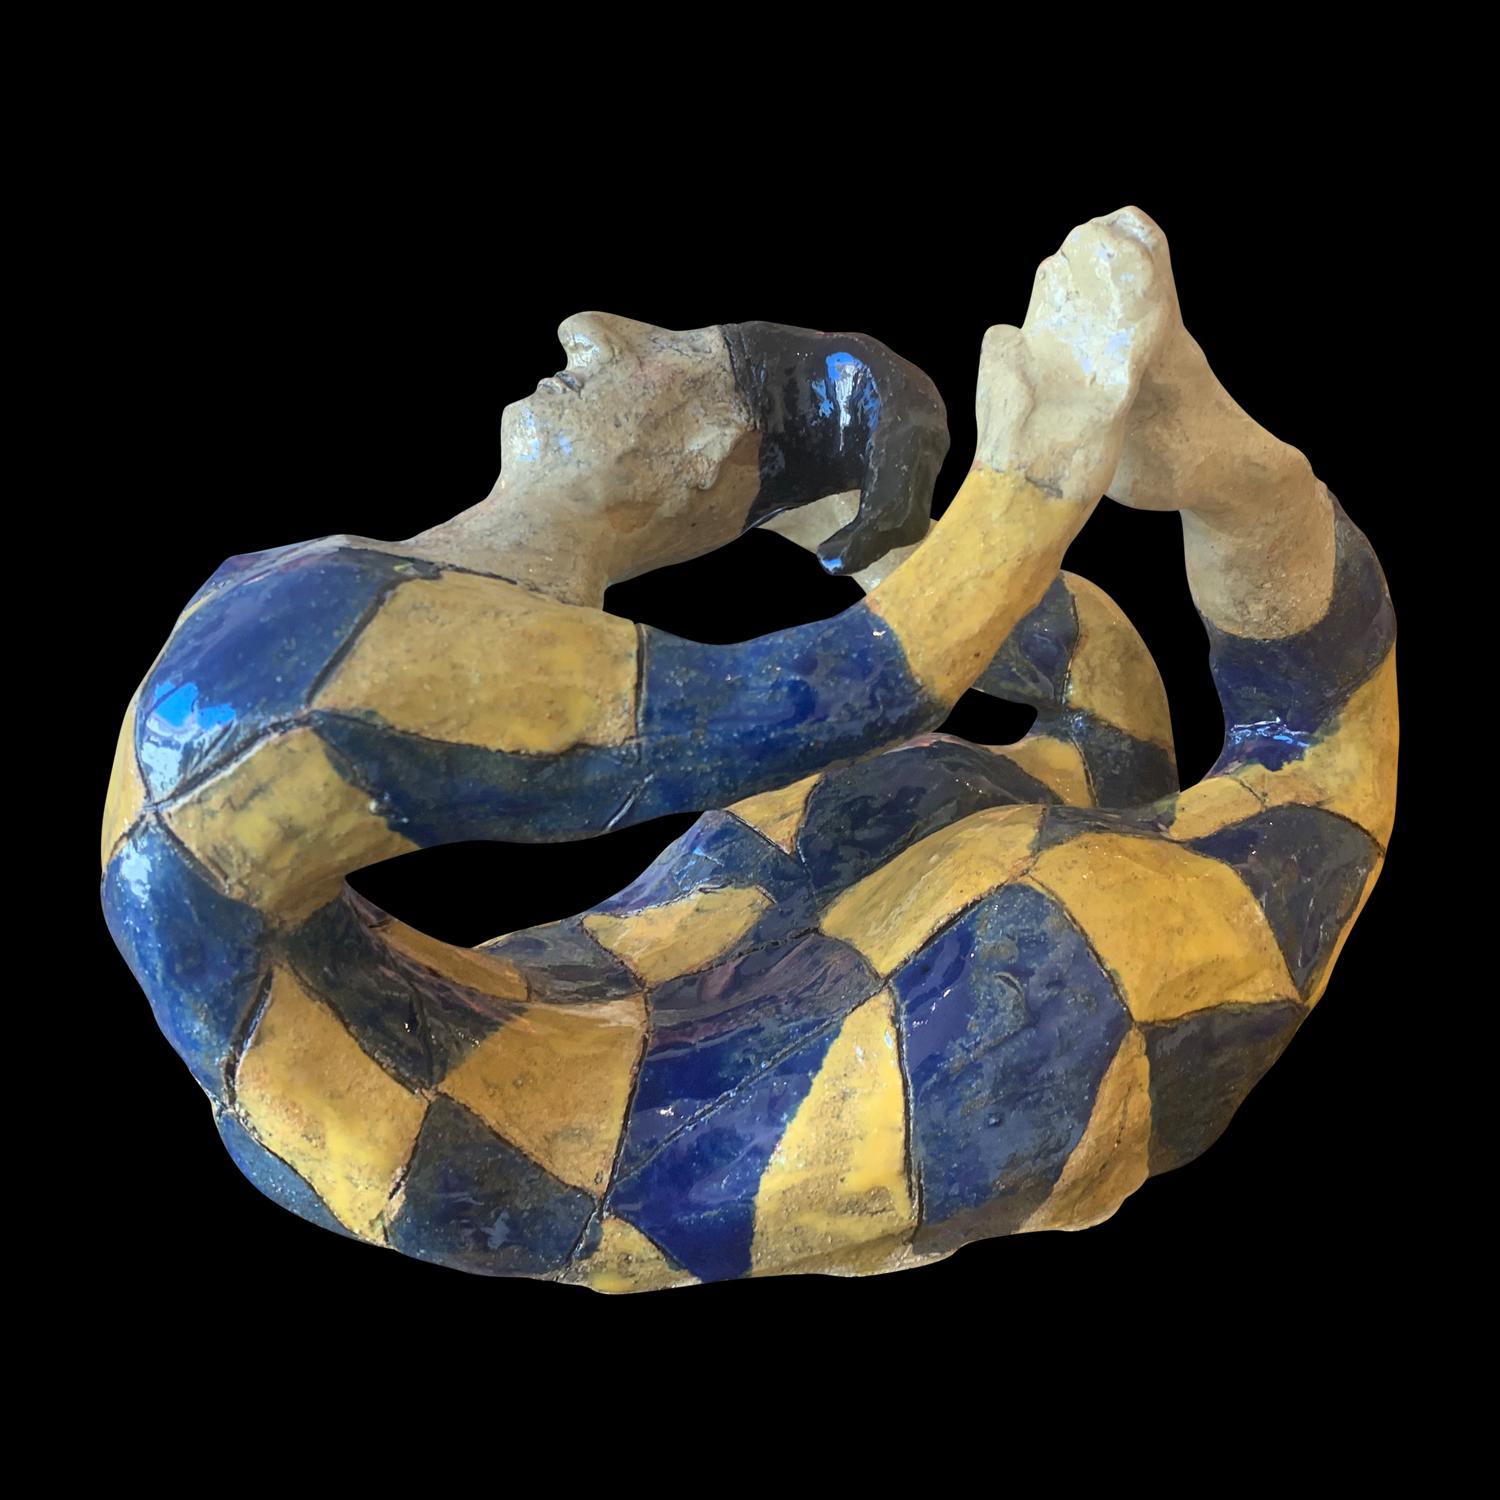 Adi Rom Figurative Sculpture - Acrobat Young Male  Figurative Art Glazed Ceramic Sculpture 1 of 1 by Adi